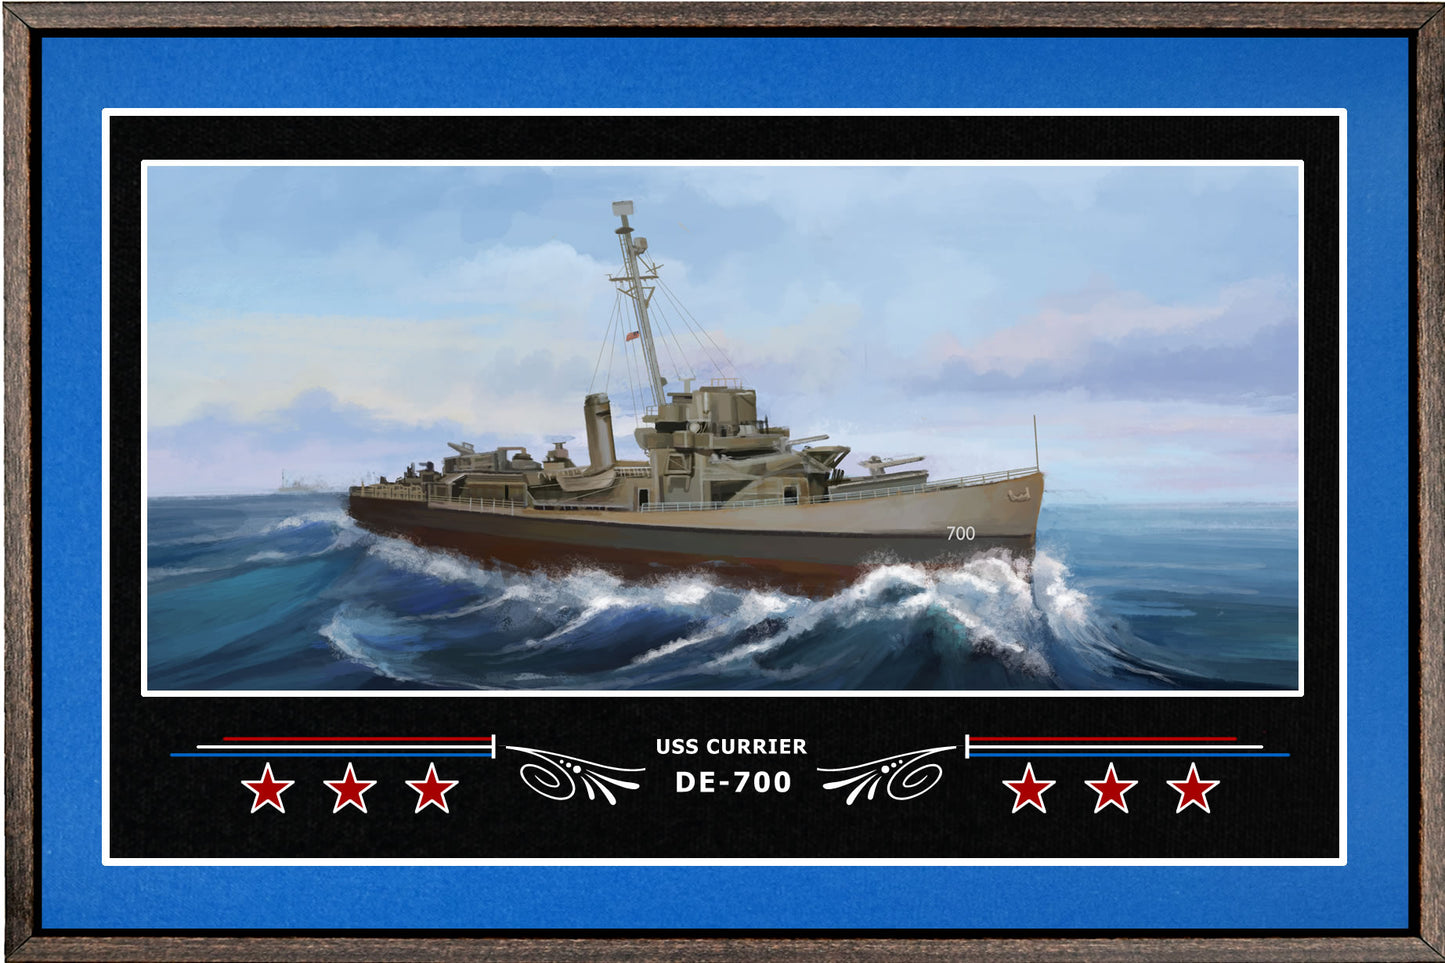 USS CURRIER DE 700 BOX FRAMED CANVAS ART BLUE